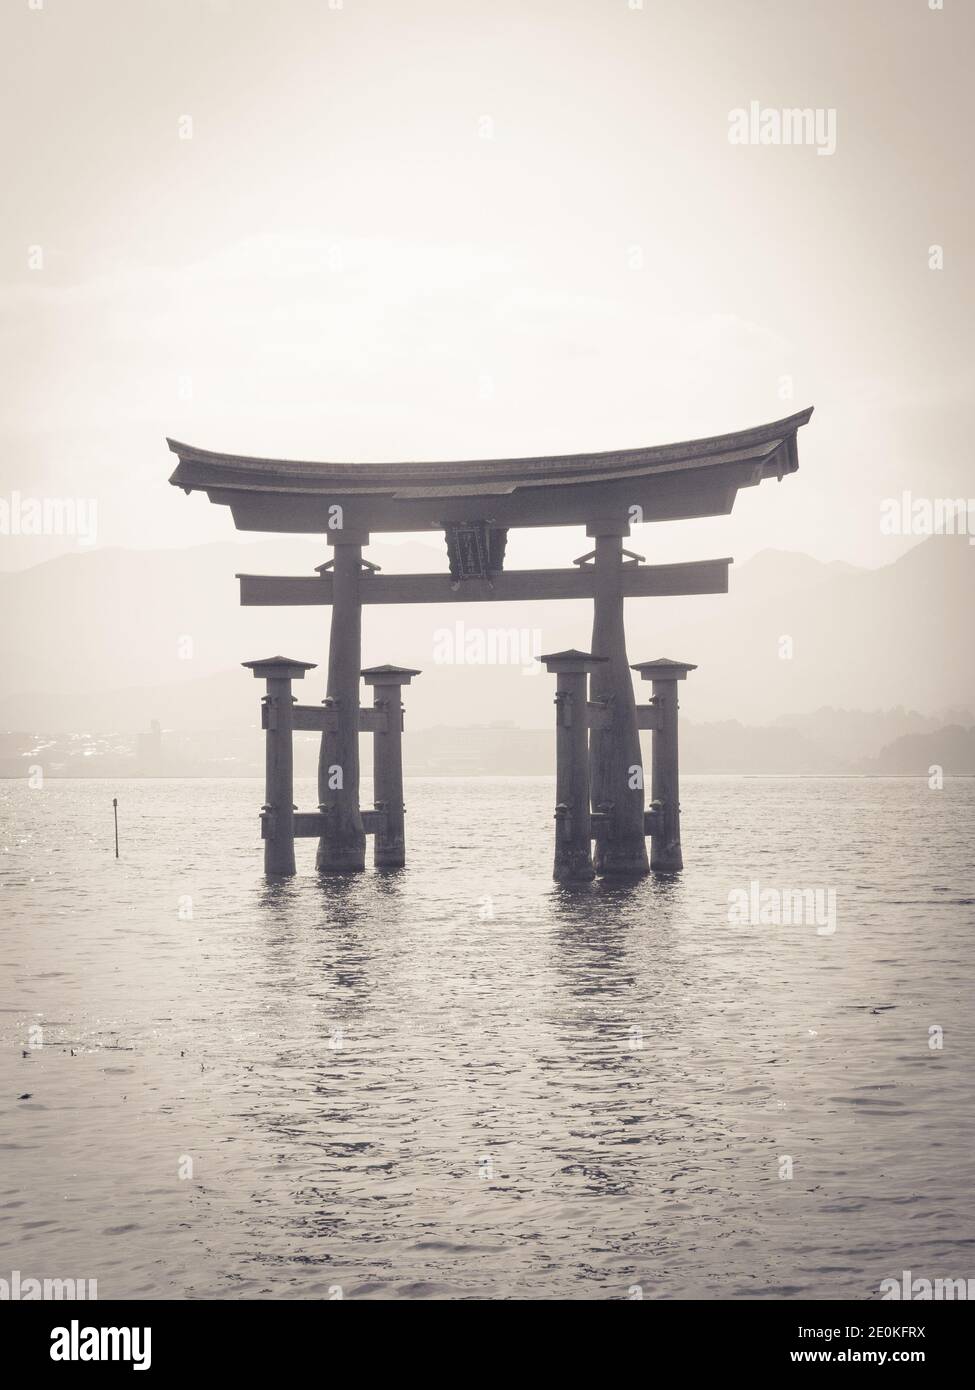 Cancello galleggiante nero e bianco del santuario di Itsukushima (Itsukushima-jinja) sull'isola di Miyajima (Itsukushima) nella prefettura di Hiroshima, Giappone. Foto Stock